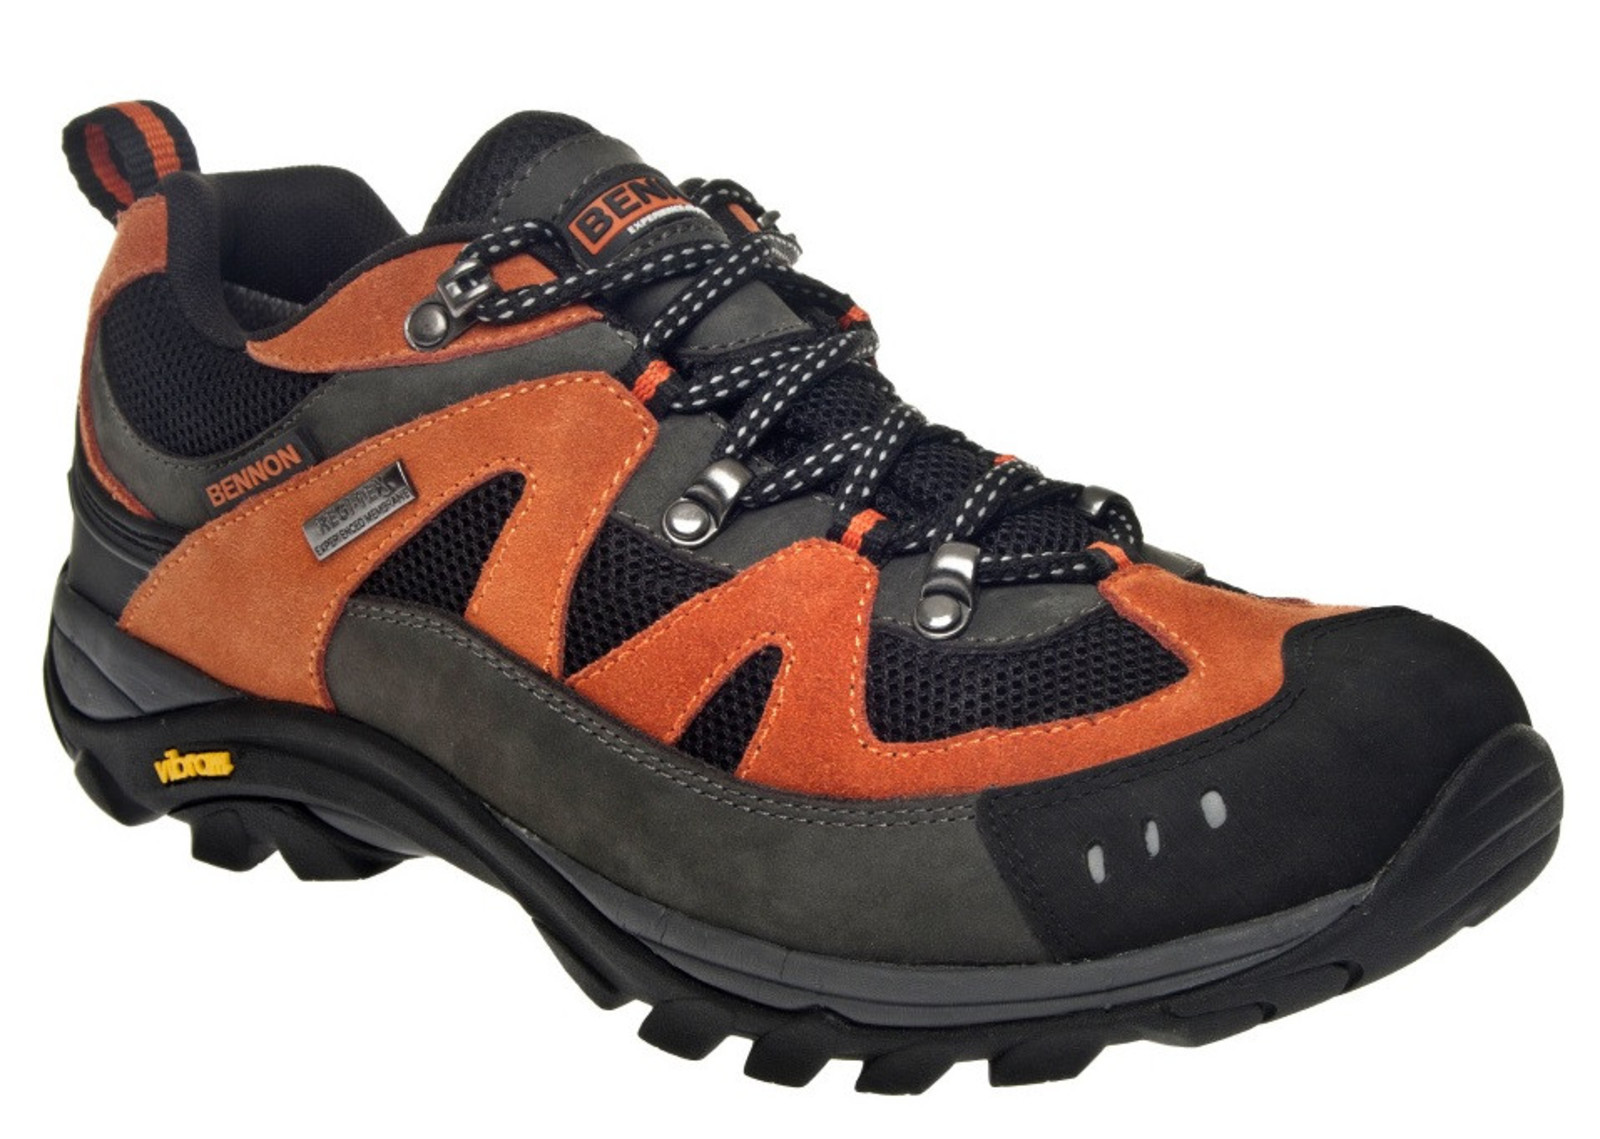 Outdoorové topánky Bennon Emperado s membránou - veľkosť: 41, farba: sivá/oranžová